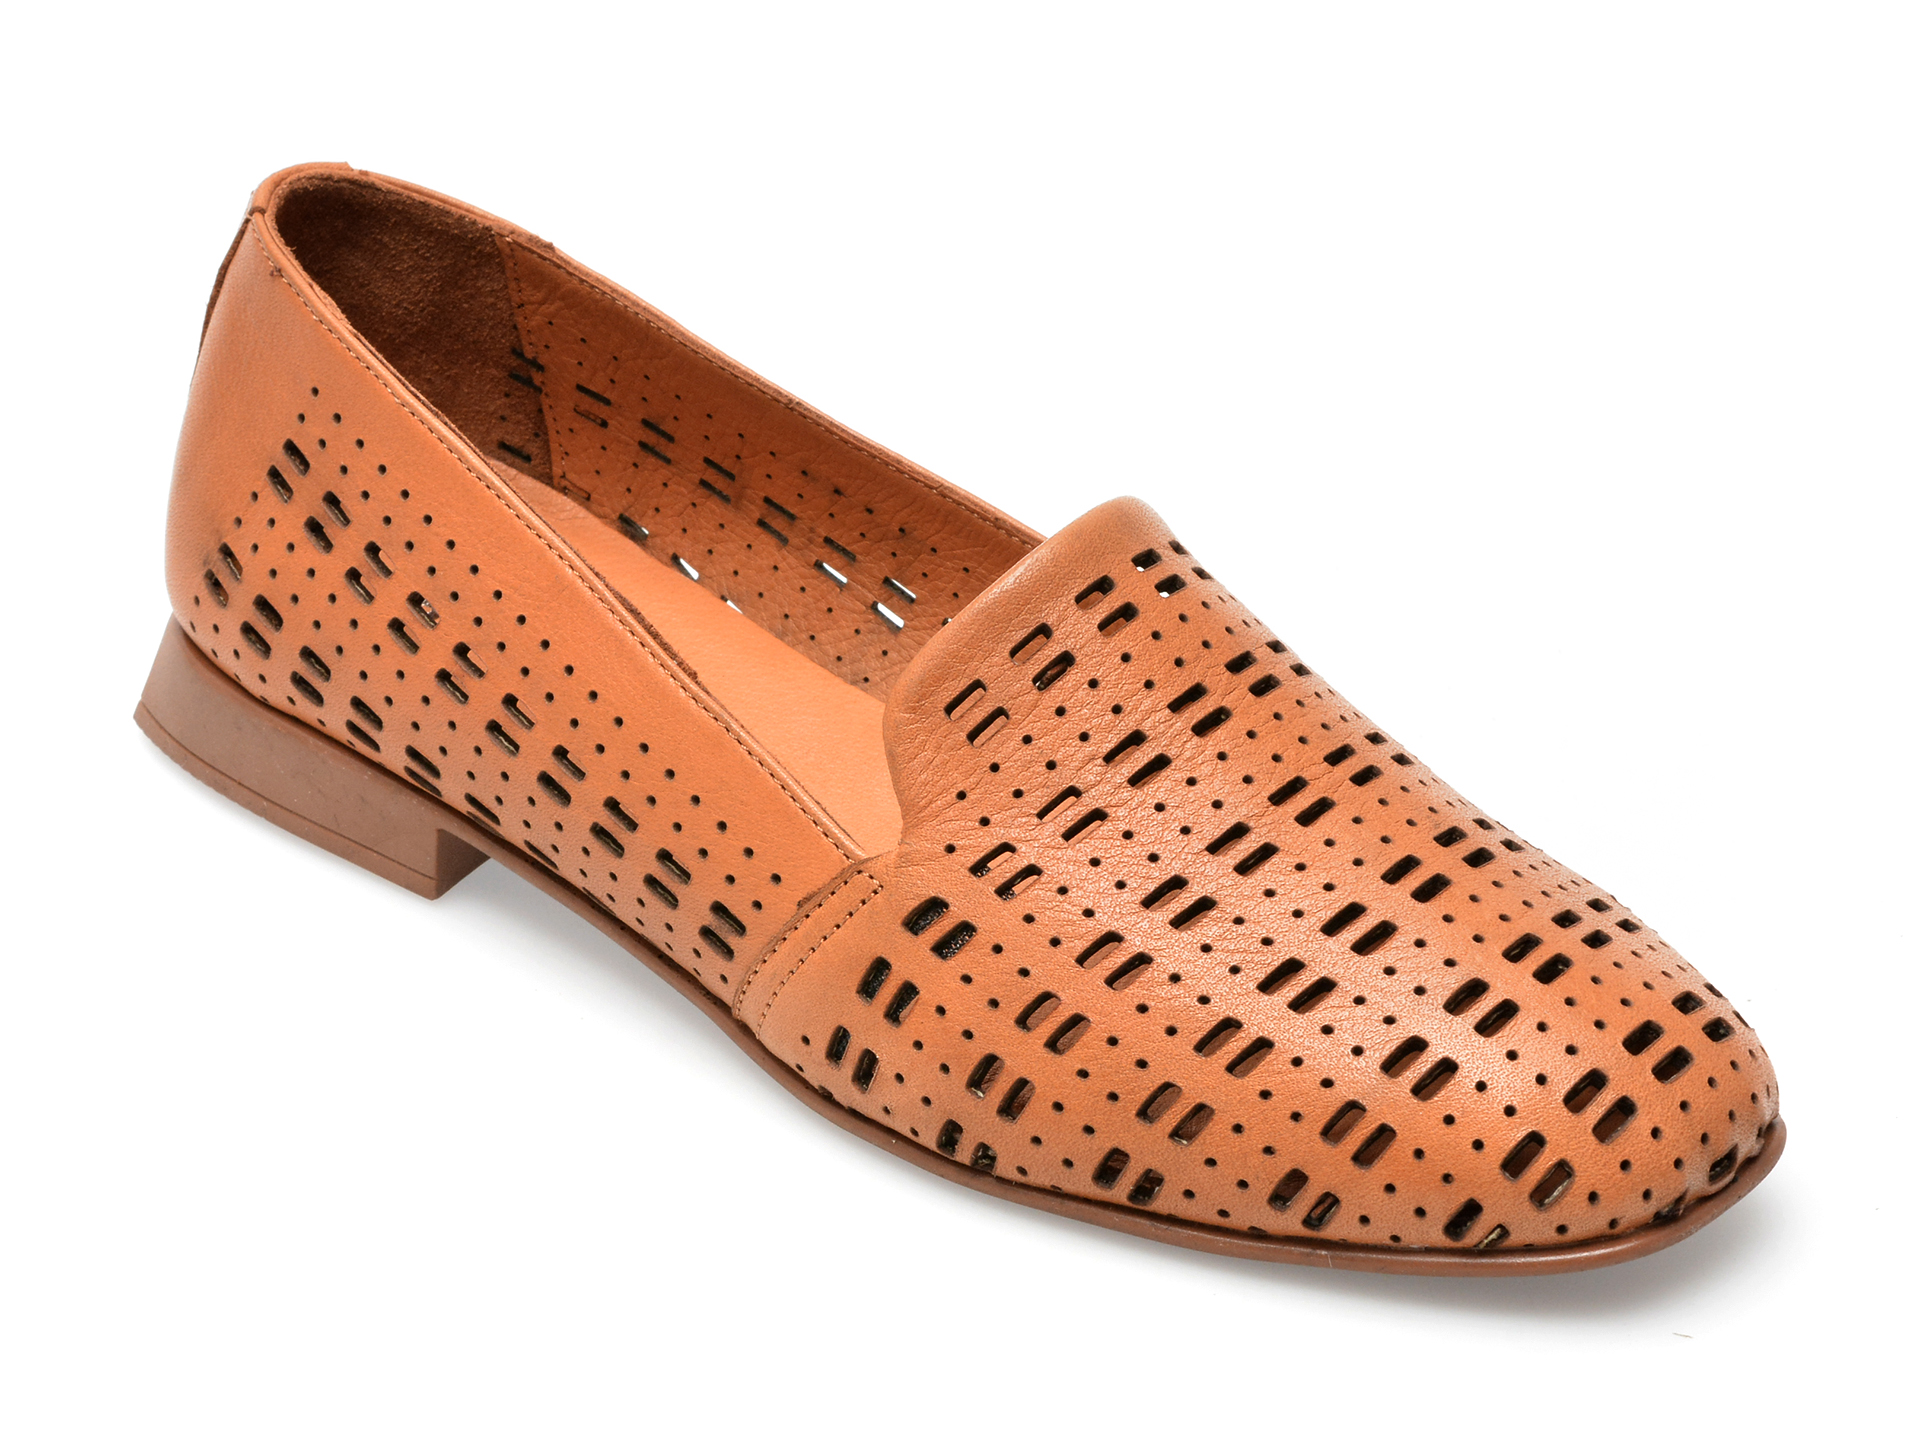 Pantofi GRYXX maro, 10803, din piele naturala femei 2023-03-21